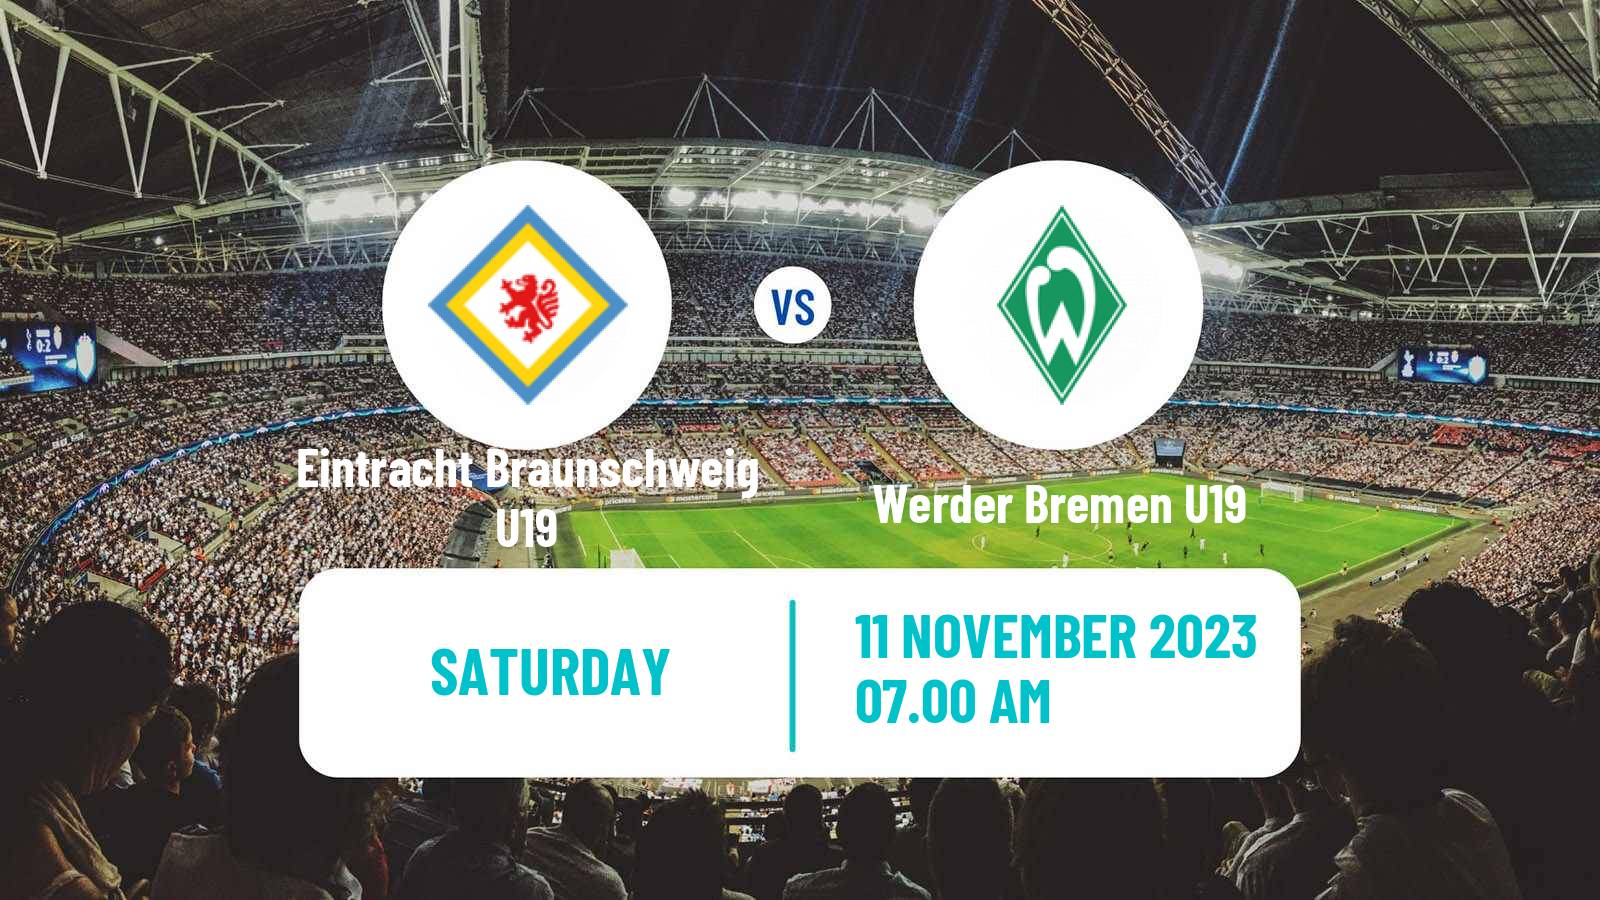 Soccer German Junioren Bundesliga North Eintracht Braunschweig U19 - Werder Bremen U19